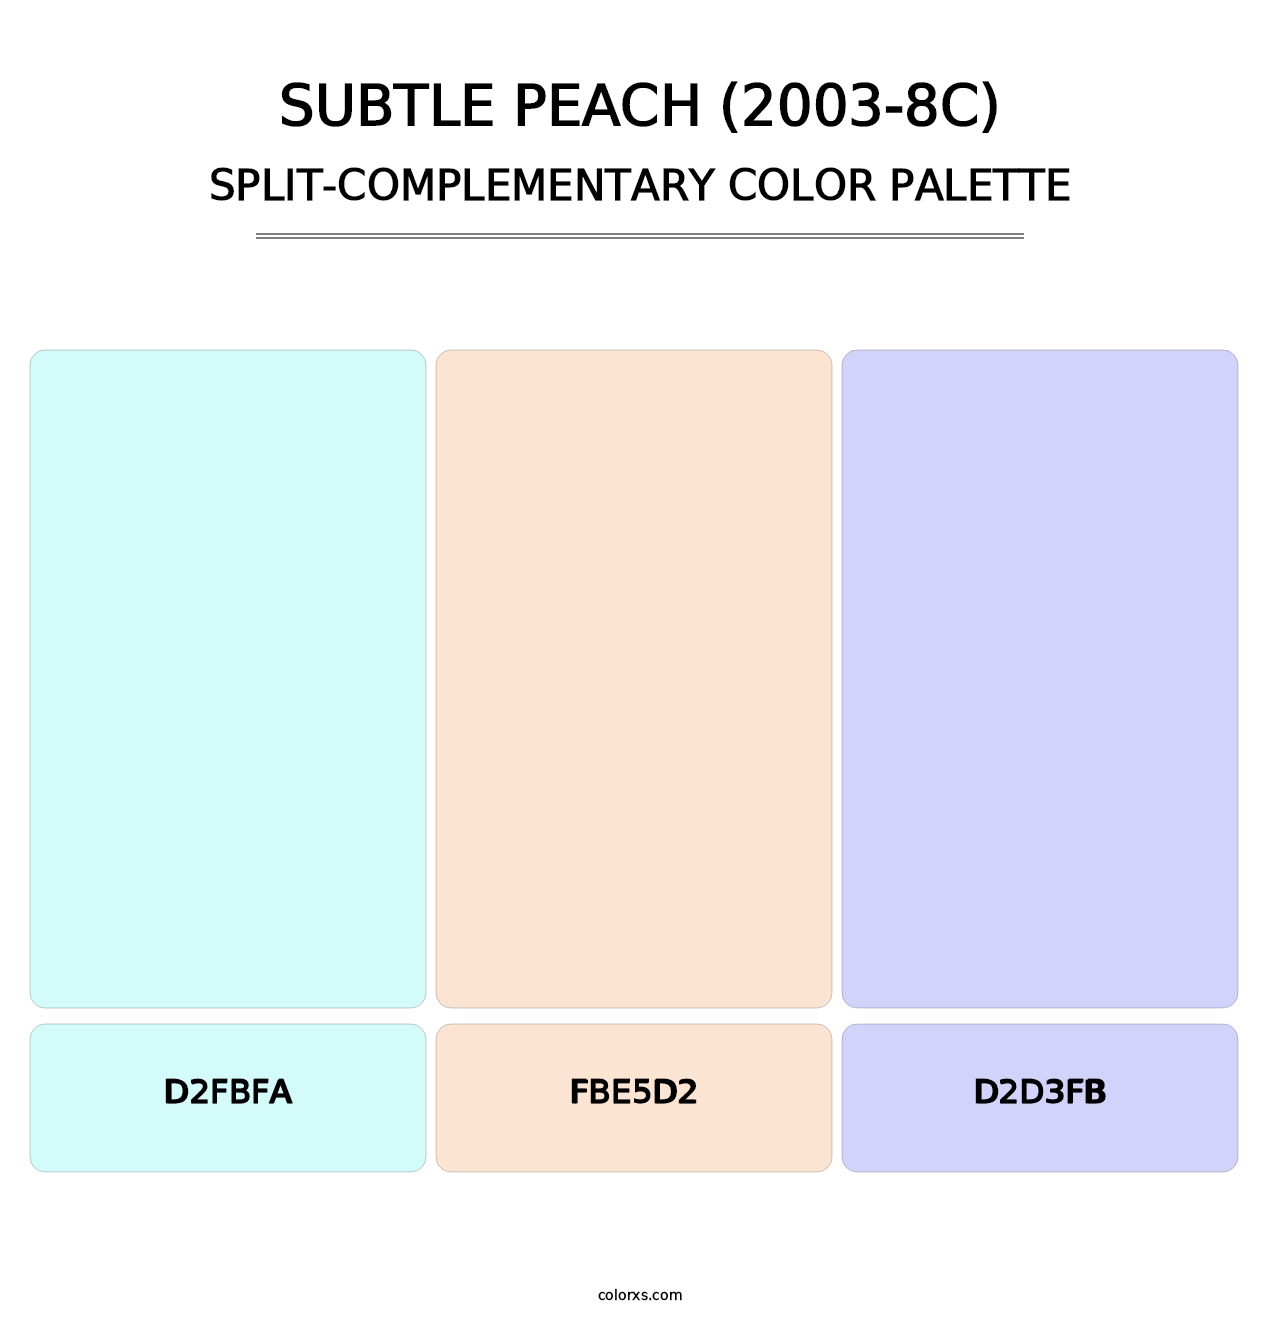 Subtle Peach (2003-8C) - Split-Complementary Color Palette